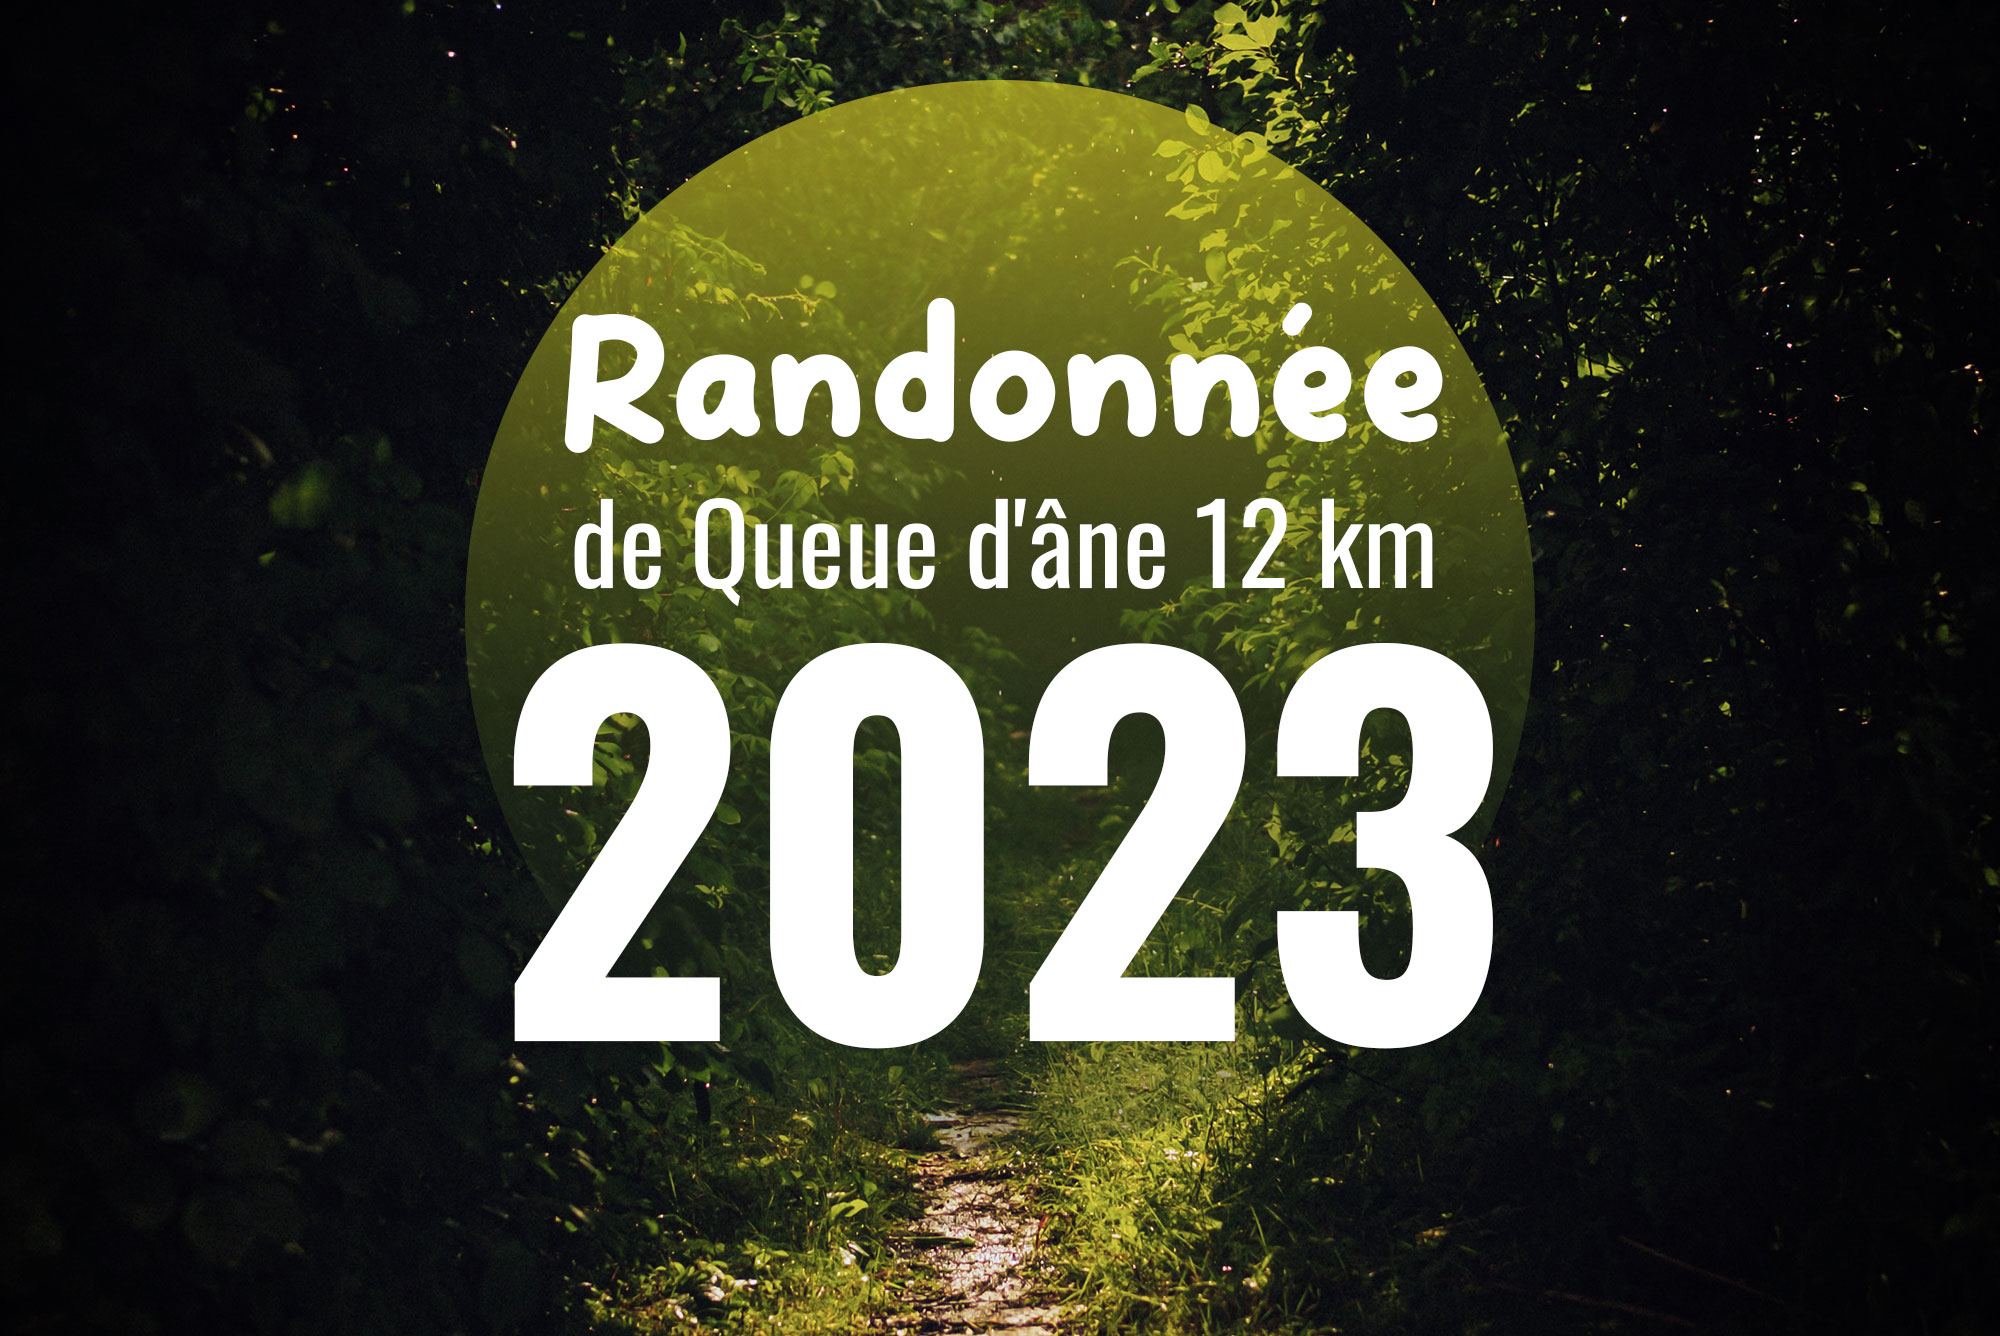 Randonnée de Queue d'âne, 12 km le 20 août 2023 à Saint-Romain et Saint-Clément